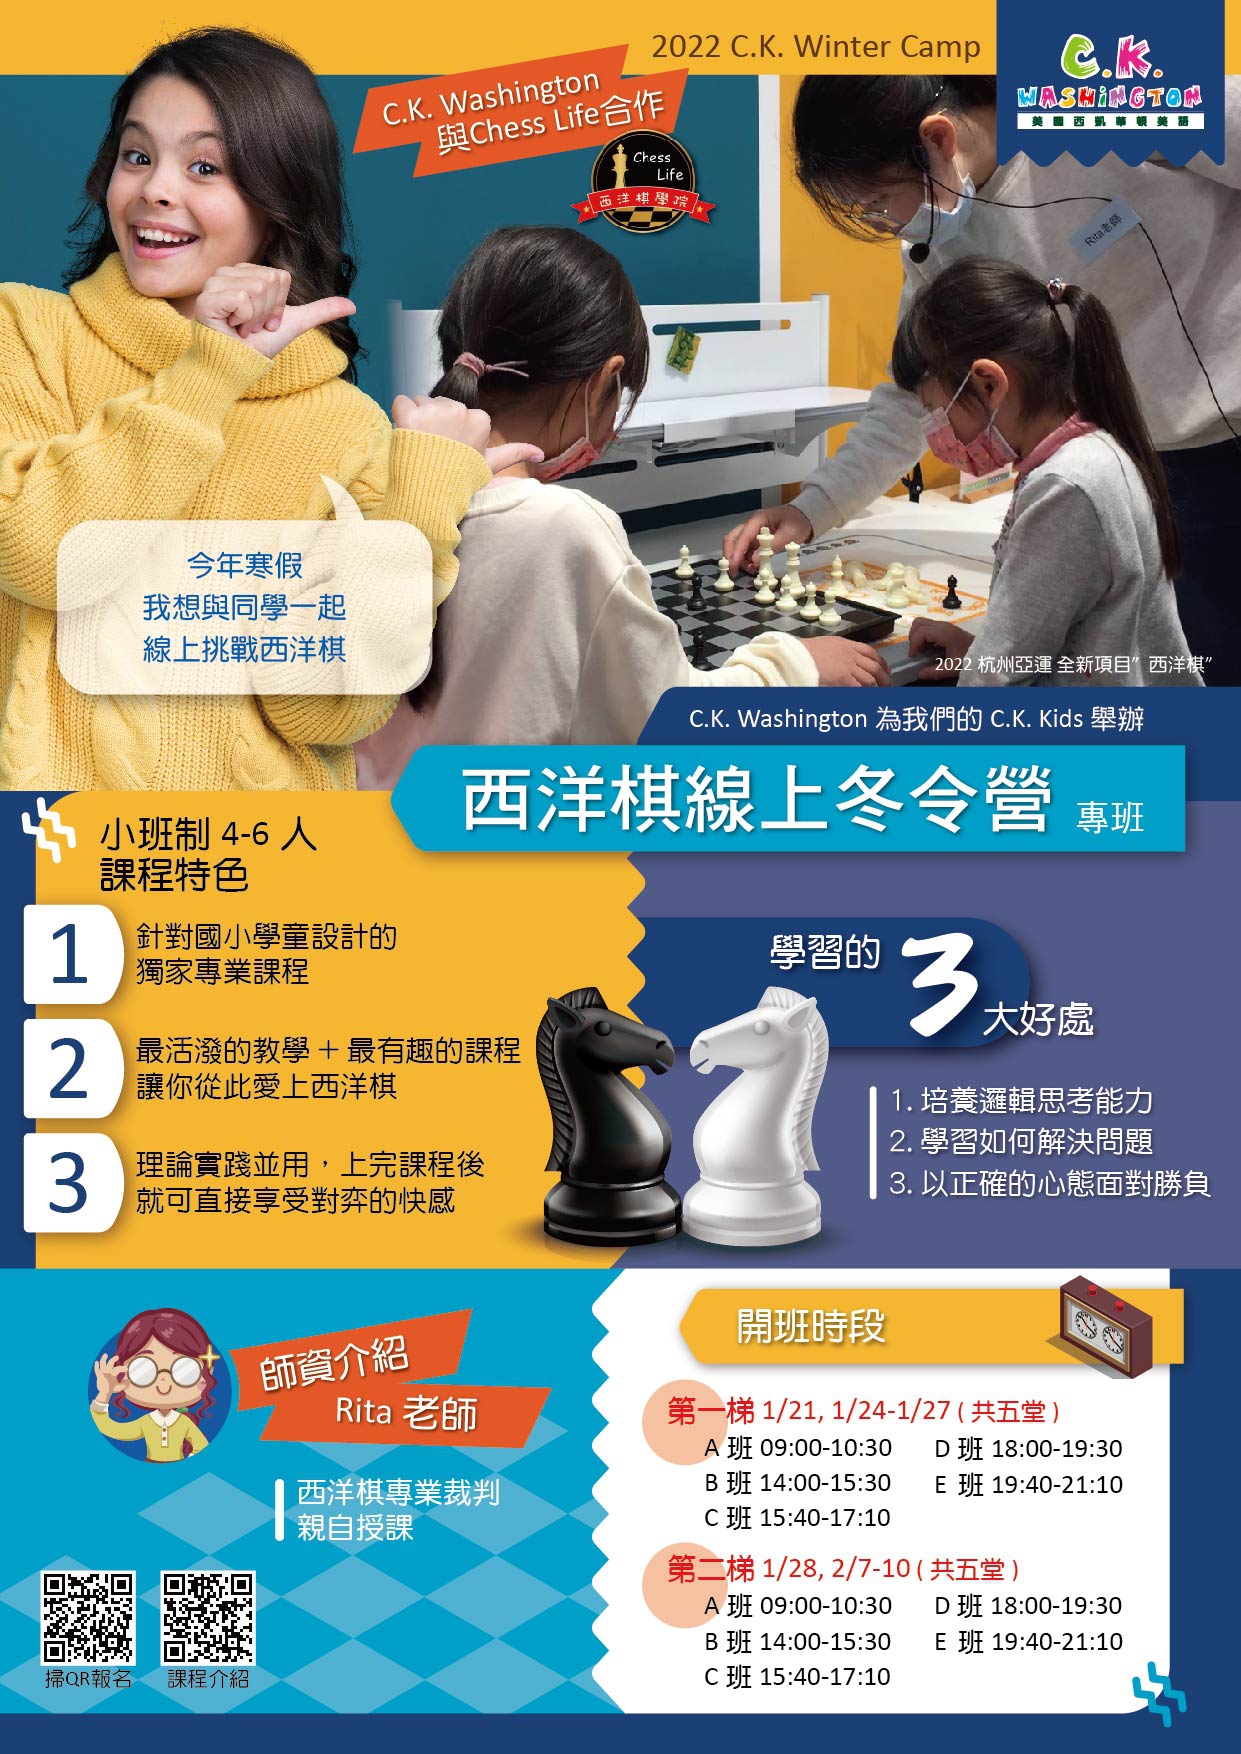 2022 線上冬令營「西洋棋課程」，快掃QR Code即可報名參加